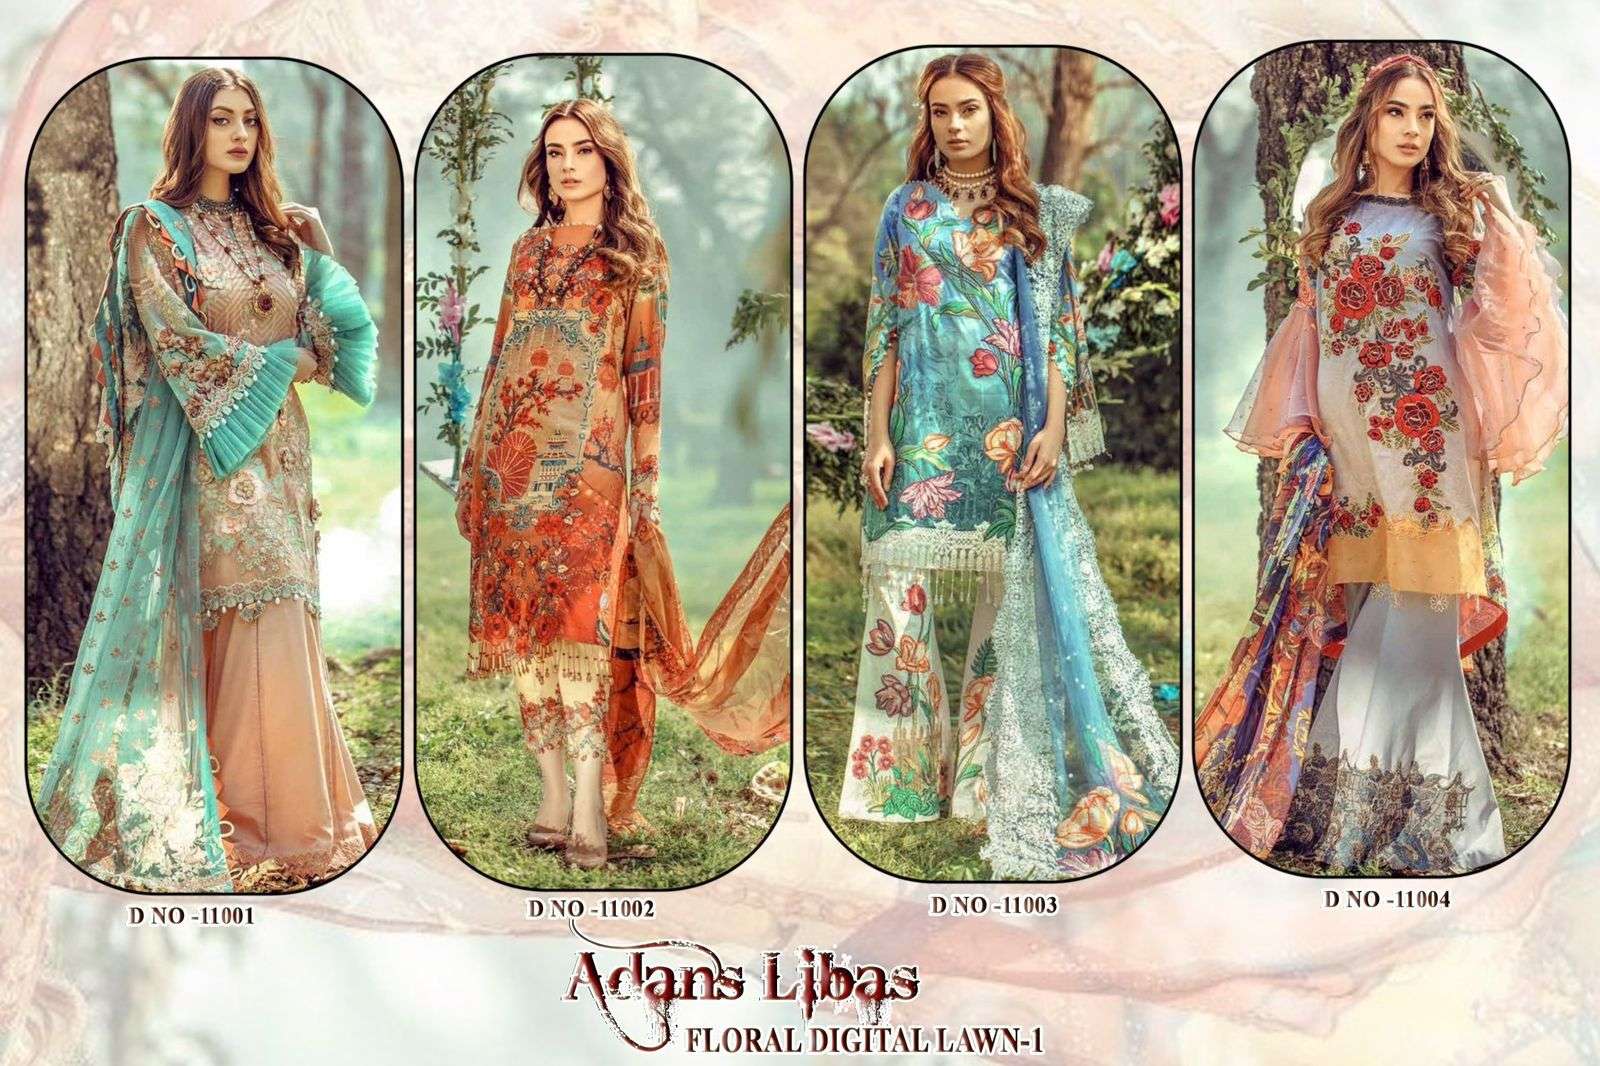 adans libas floral digital lawn vol-1 11001-11004 series fancy designer pakistani salwar suits catalogue manufacturer in surat